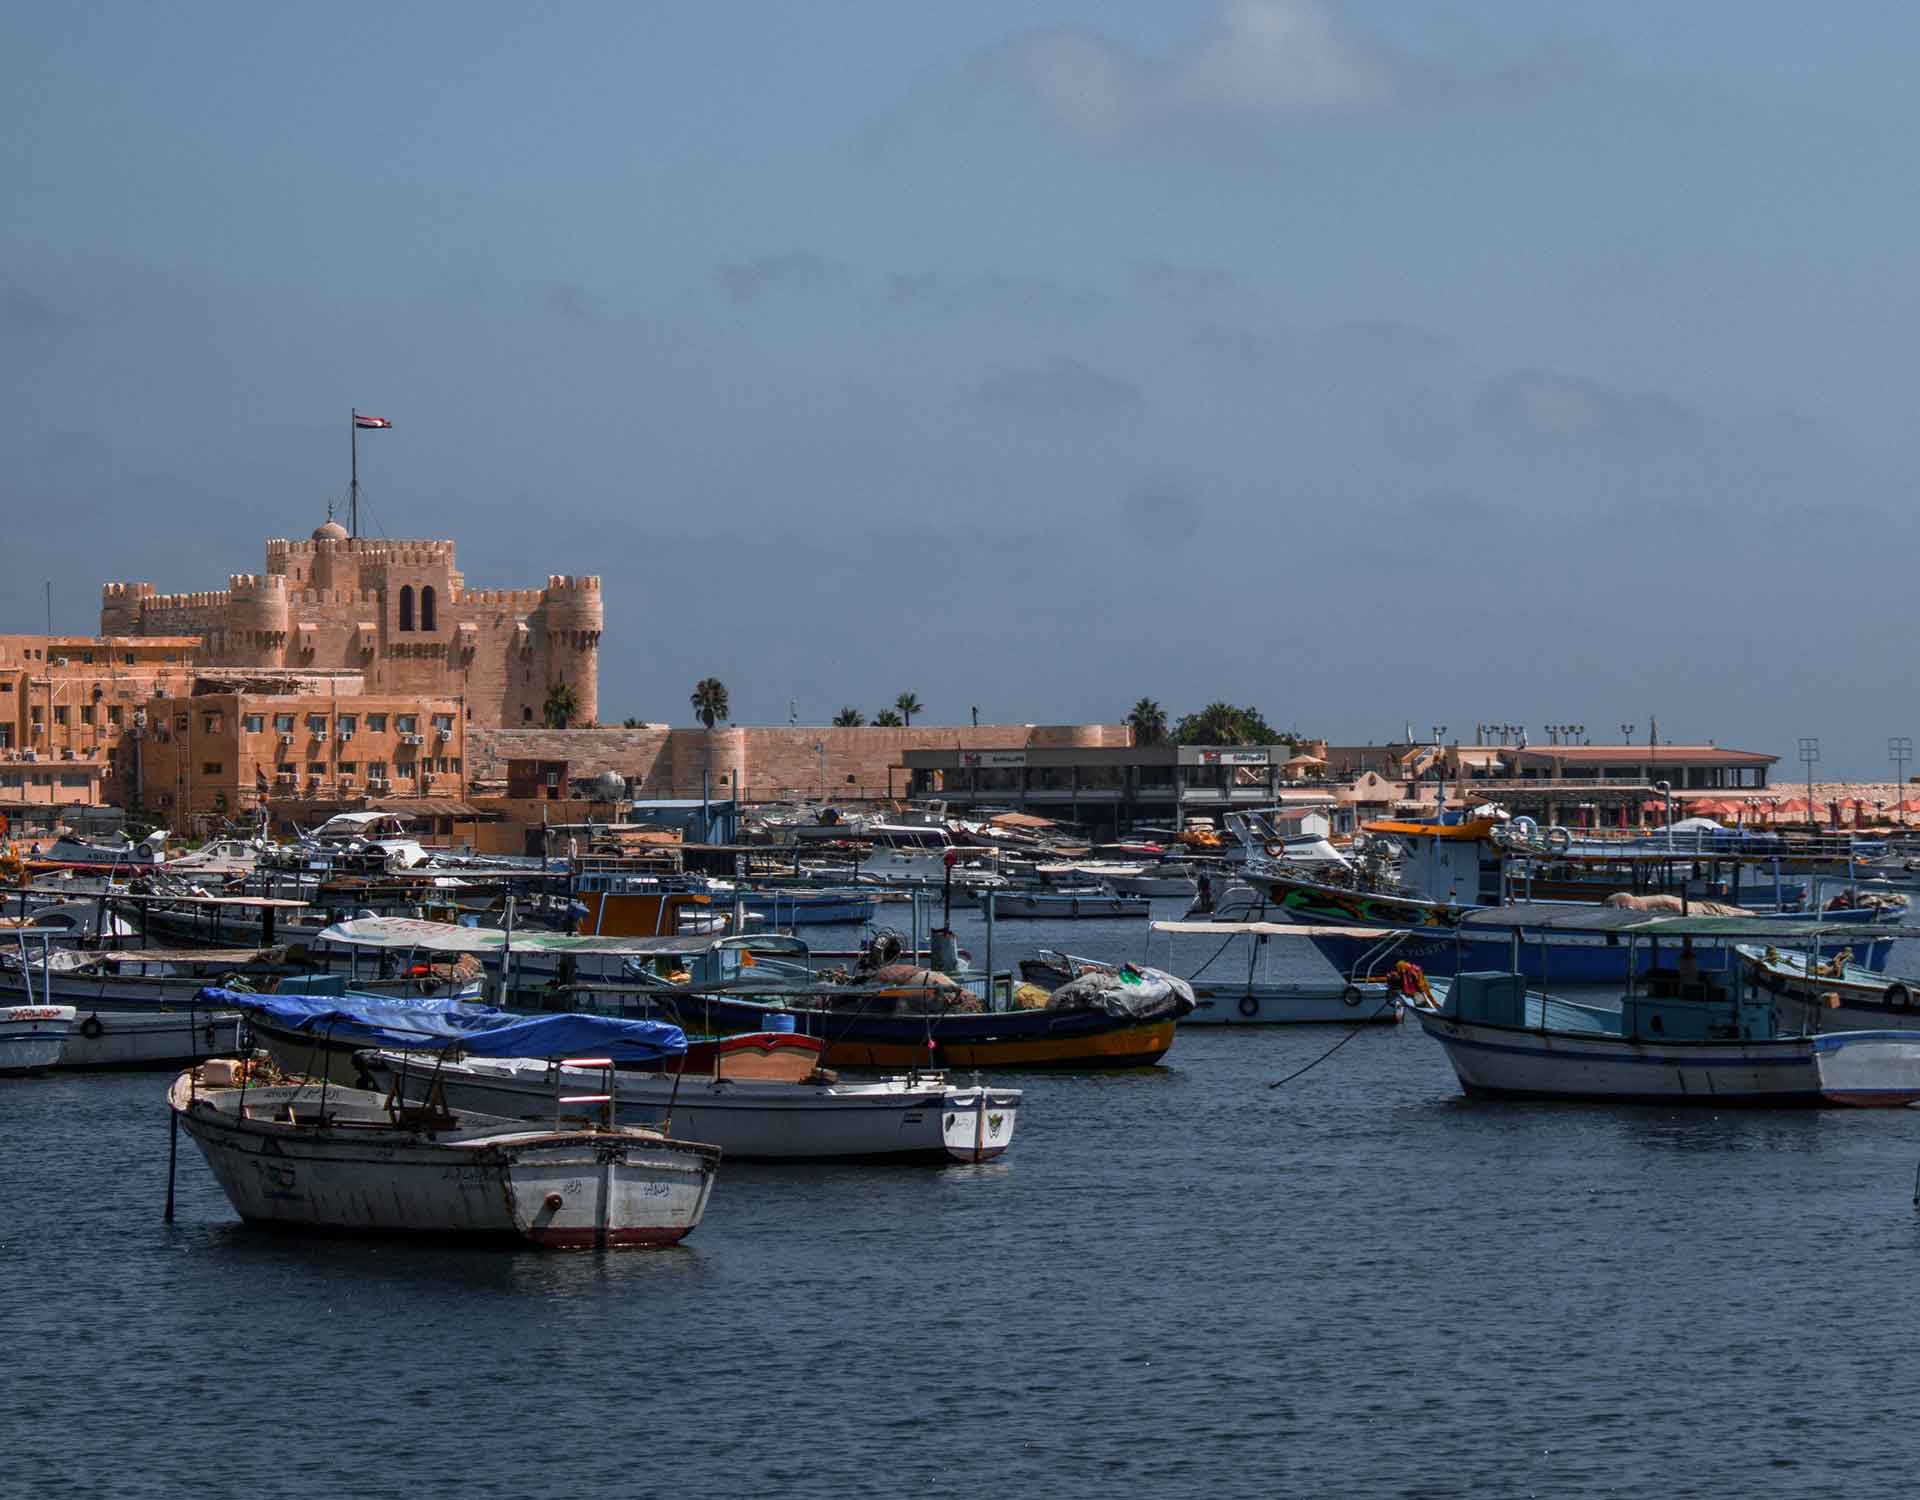 Alexandria Citadel of Qaitbay